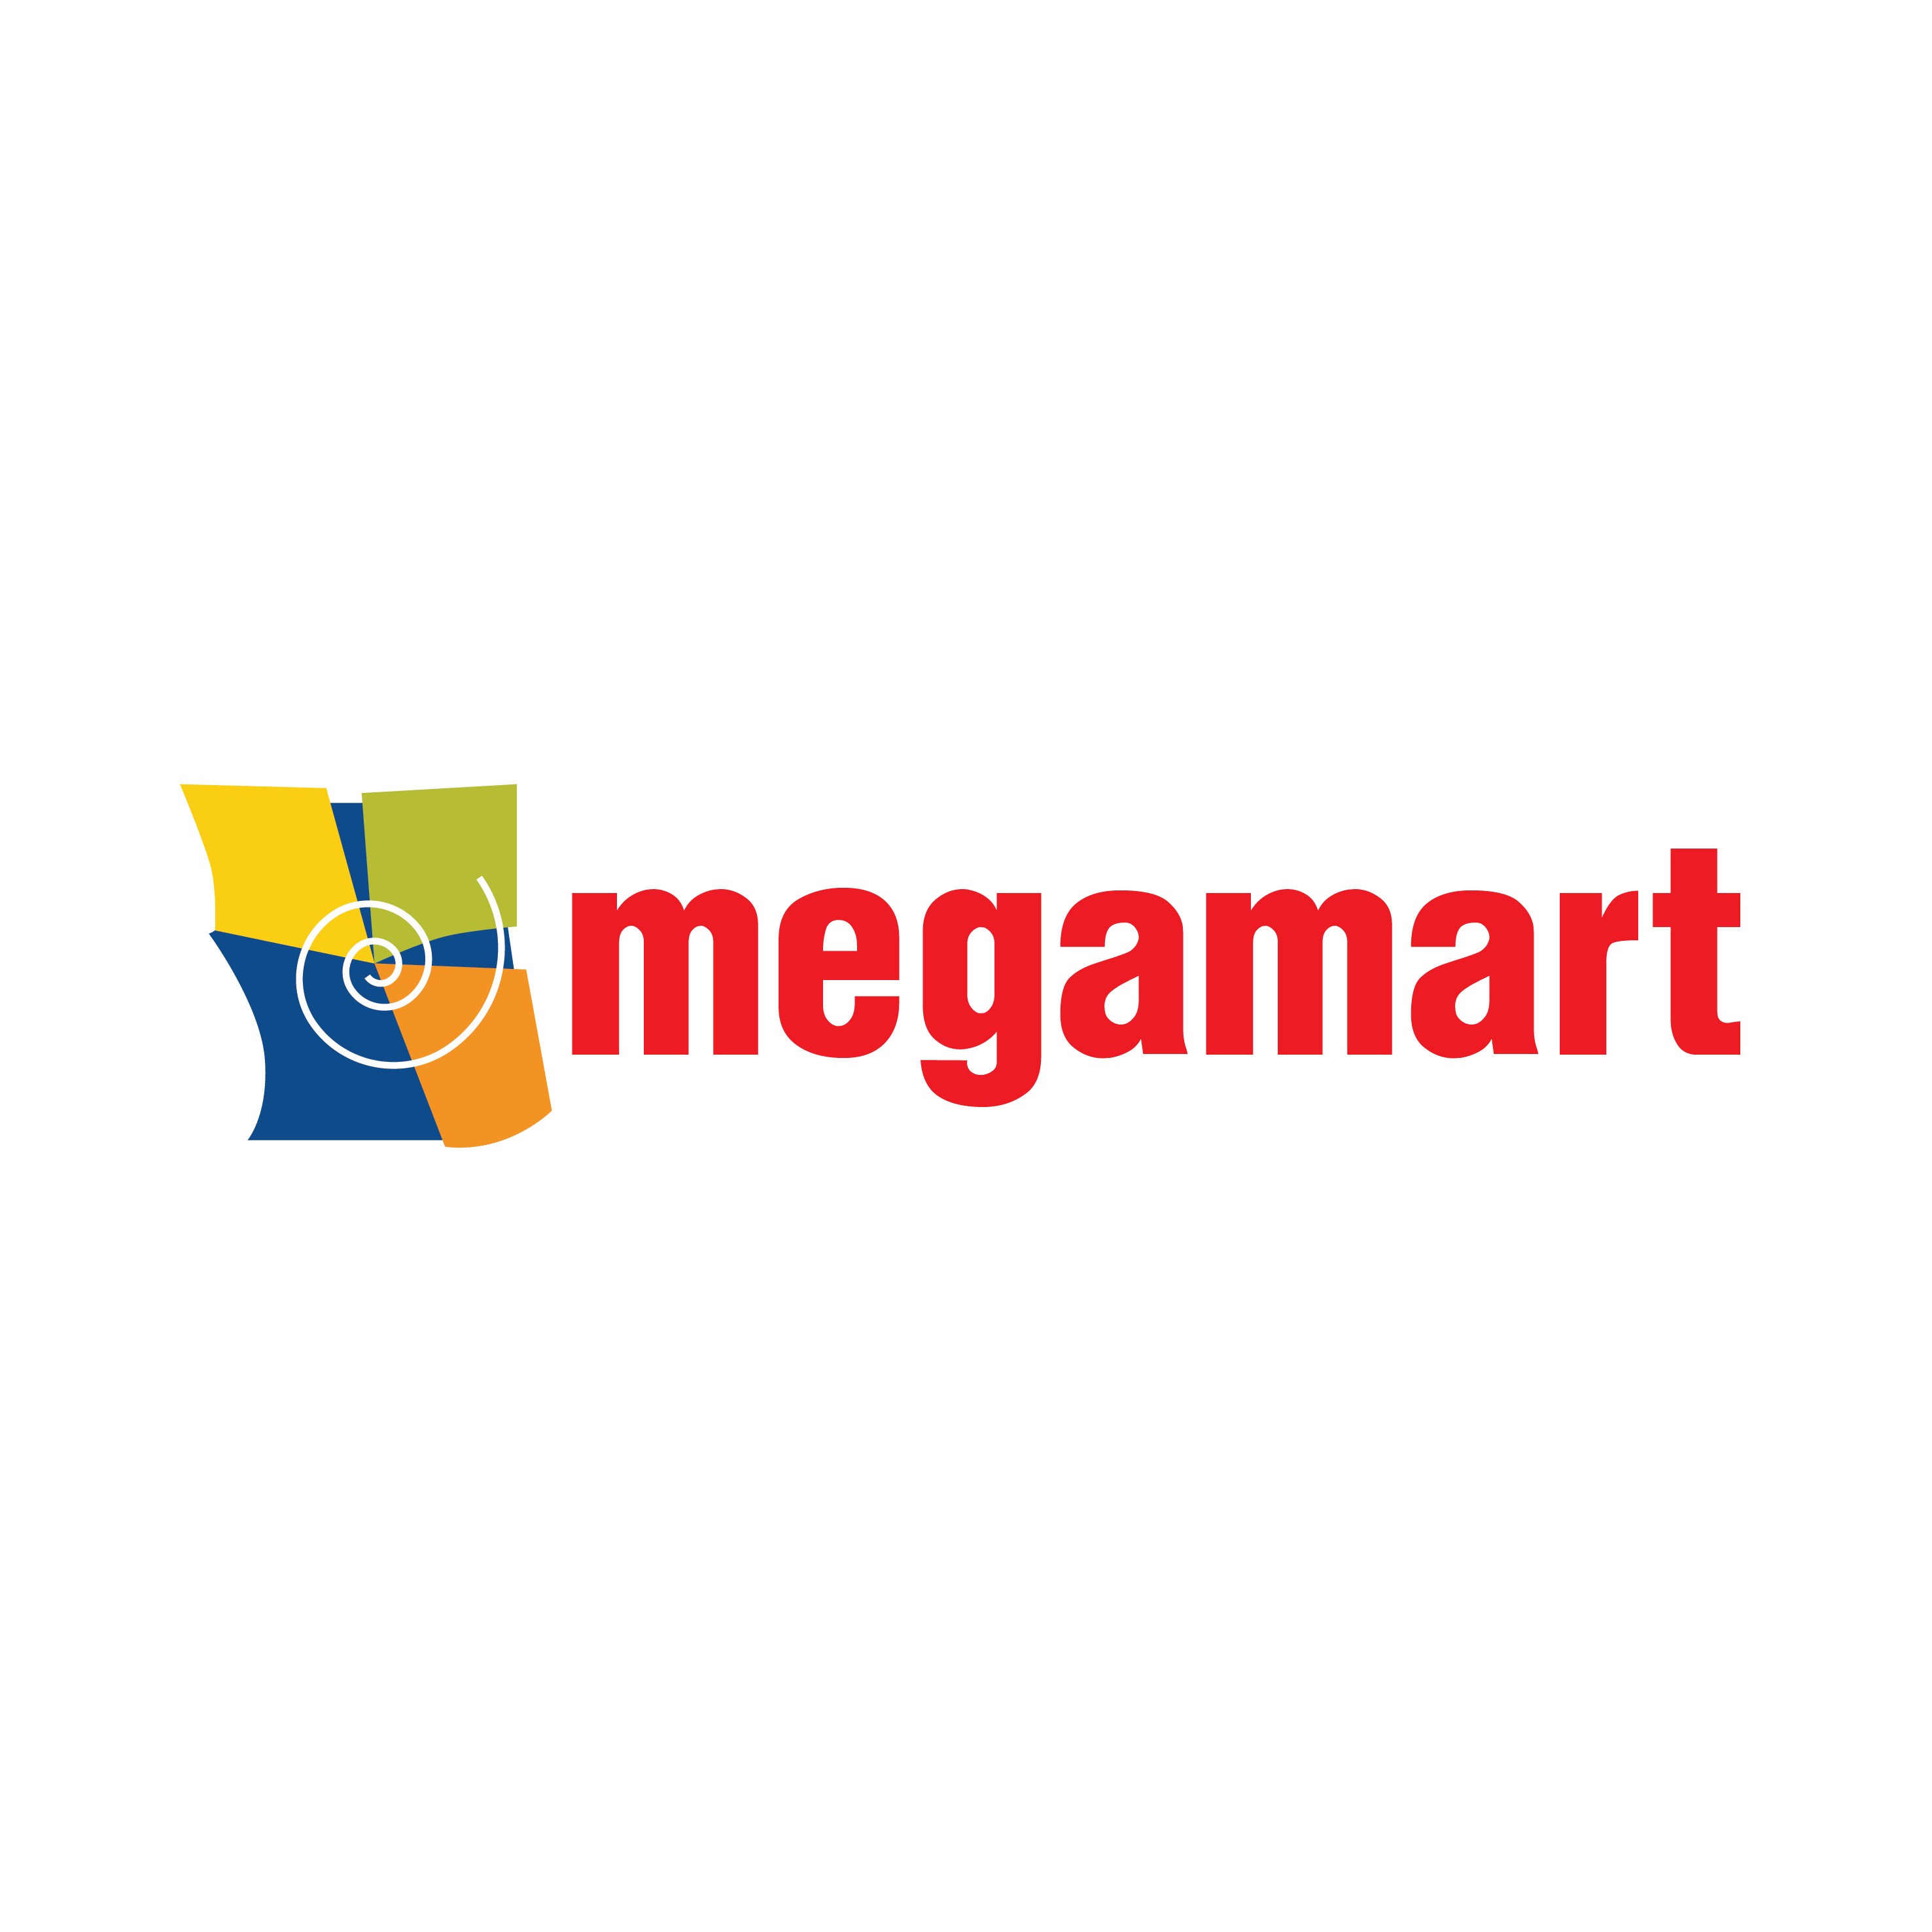 Megamart-01